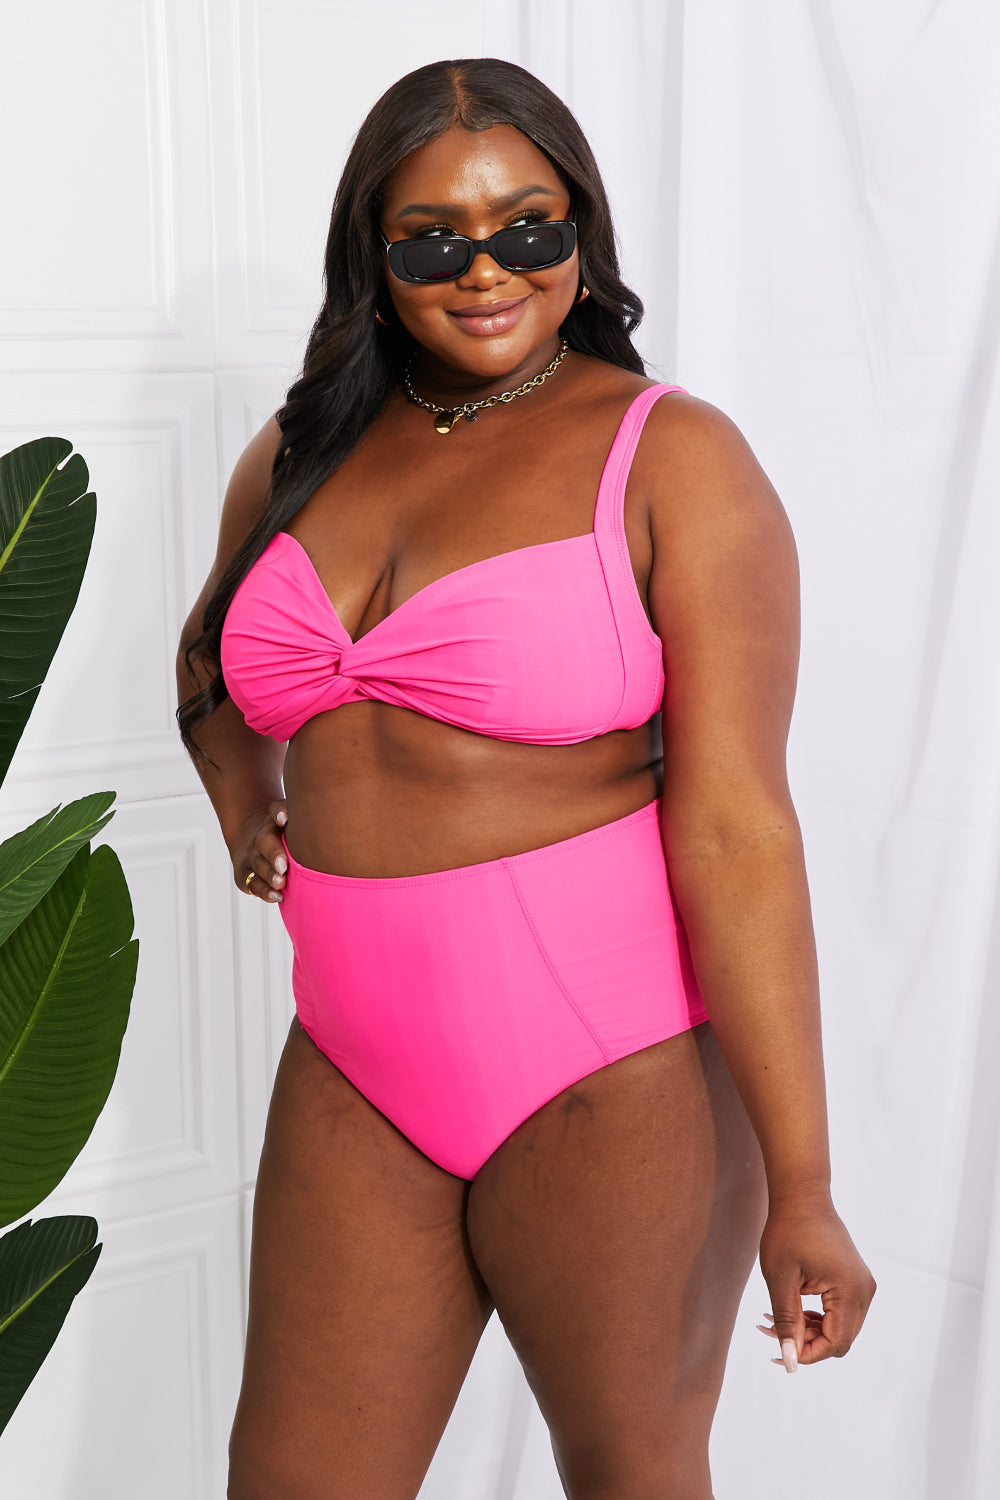 Marina West Swim Take A Dip Twist High-Rise Bikini in Pink - Sun of the Beach Boutique